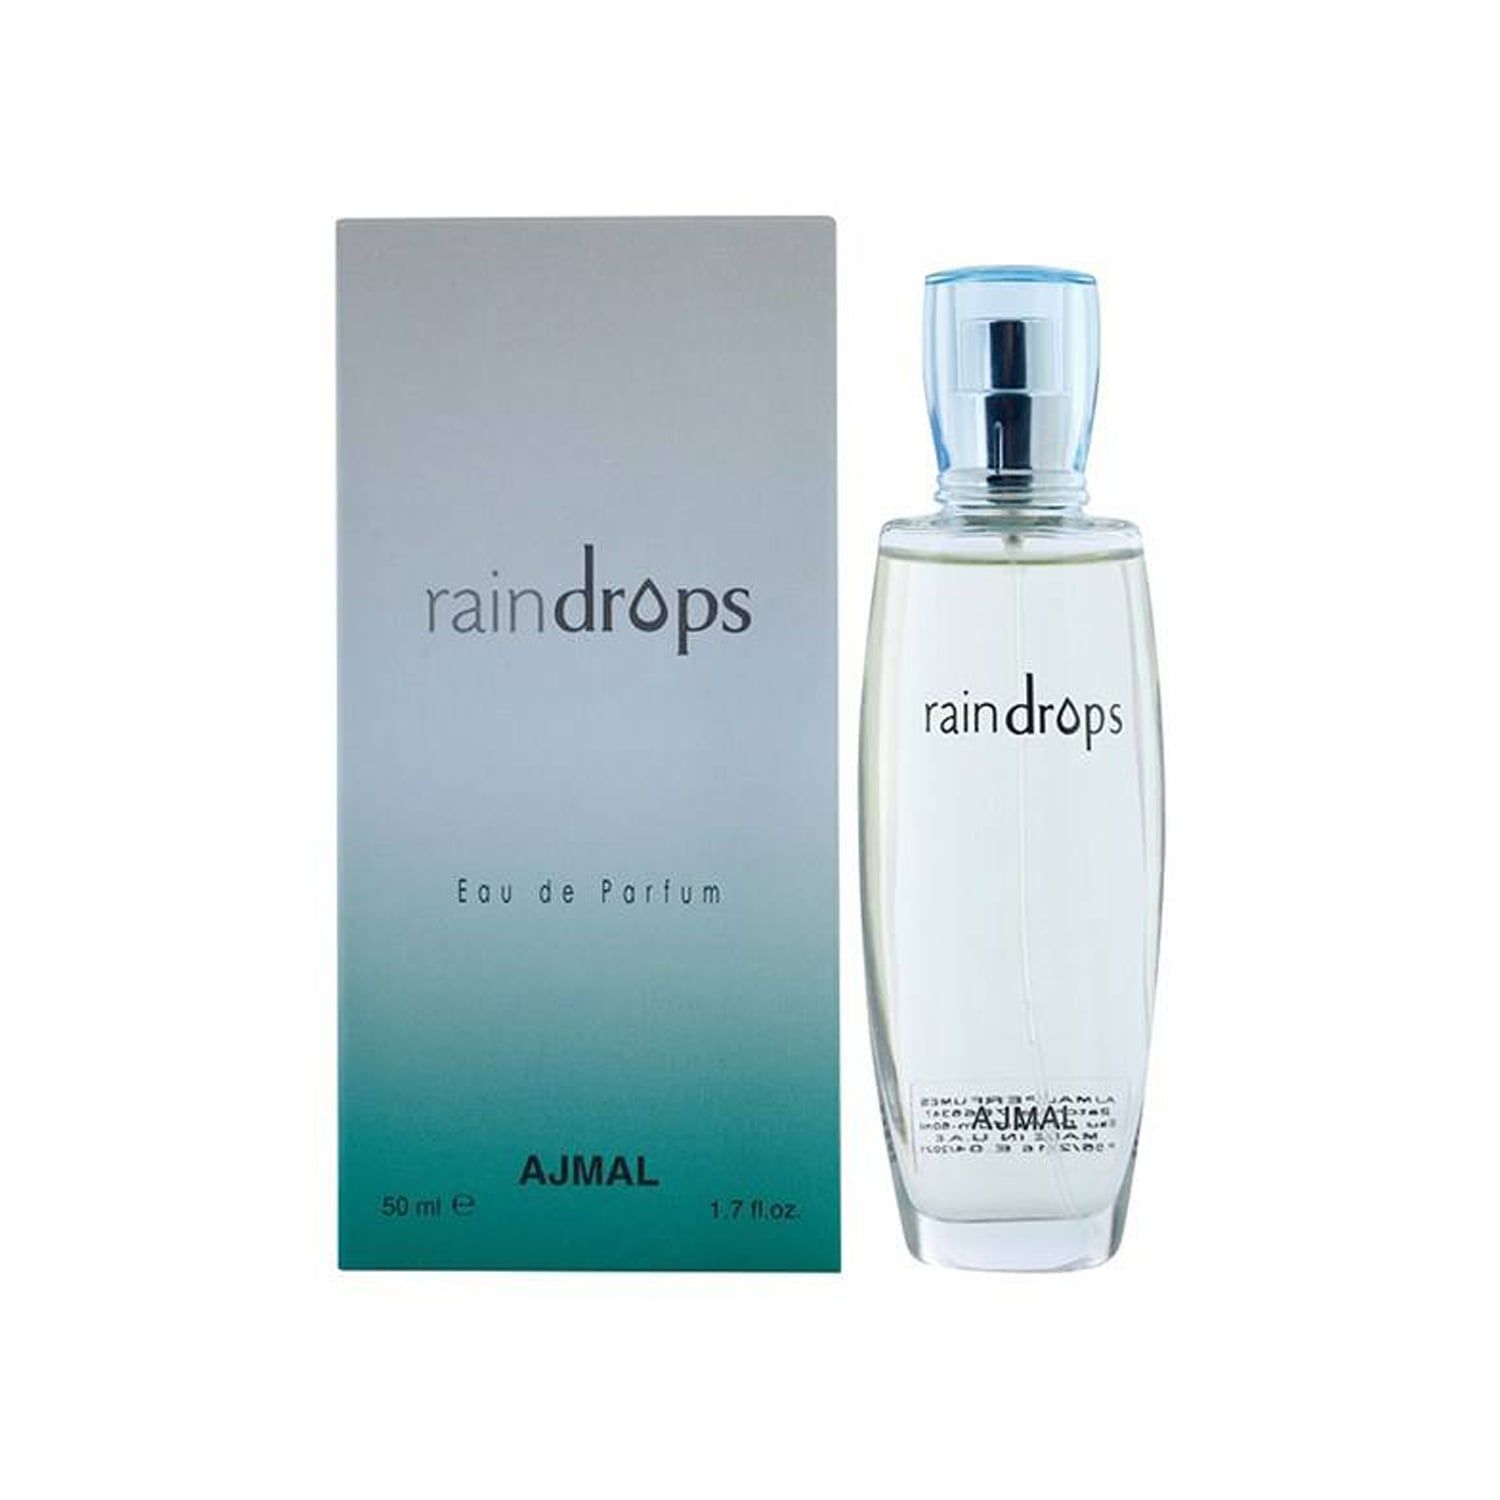 عطر زنانه اجمل مدل Raindrops حجم 50 میلی لیتری